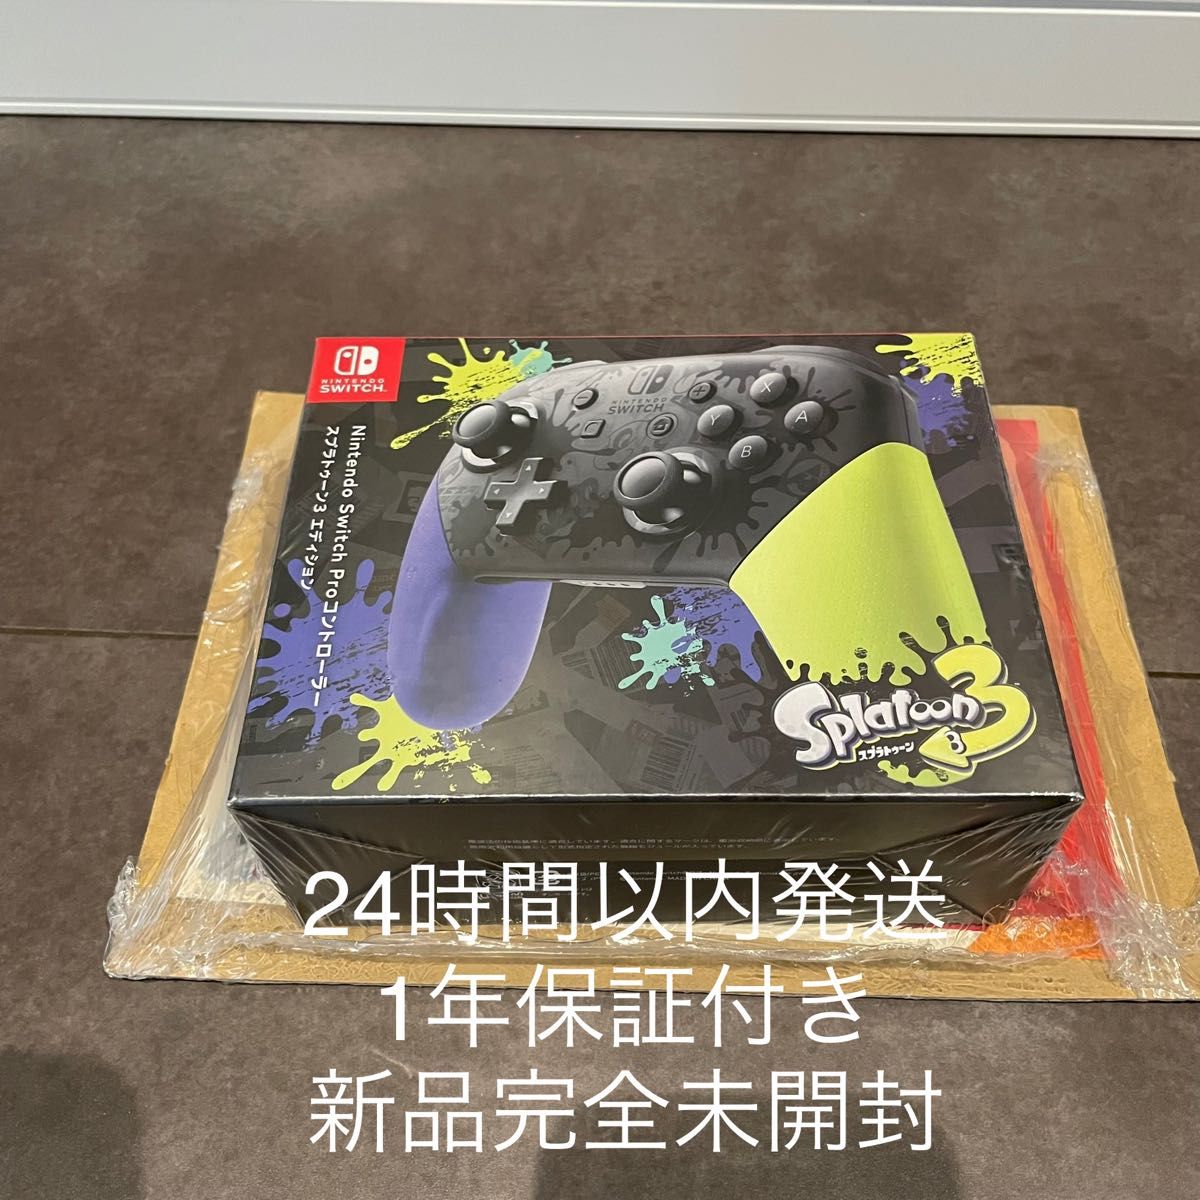 【即購入可】 Switch 純正 プロコン スプラトゥーン3 新品未開封 その他 日本卸売